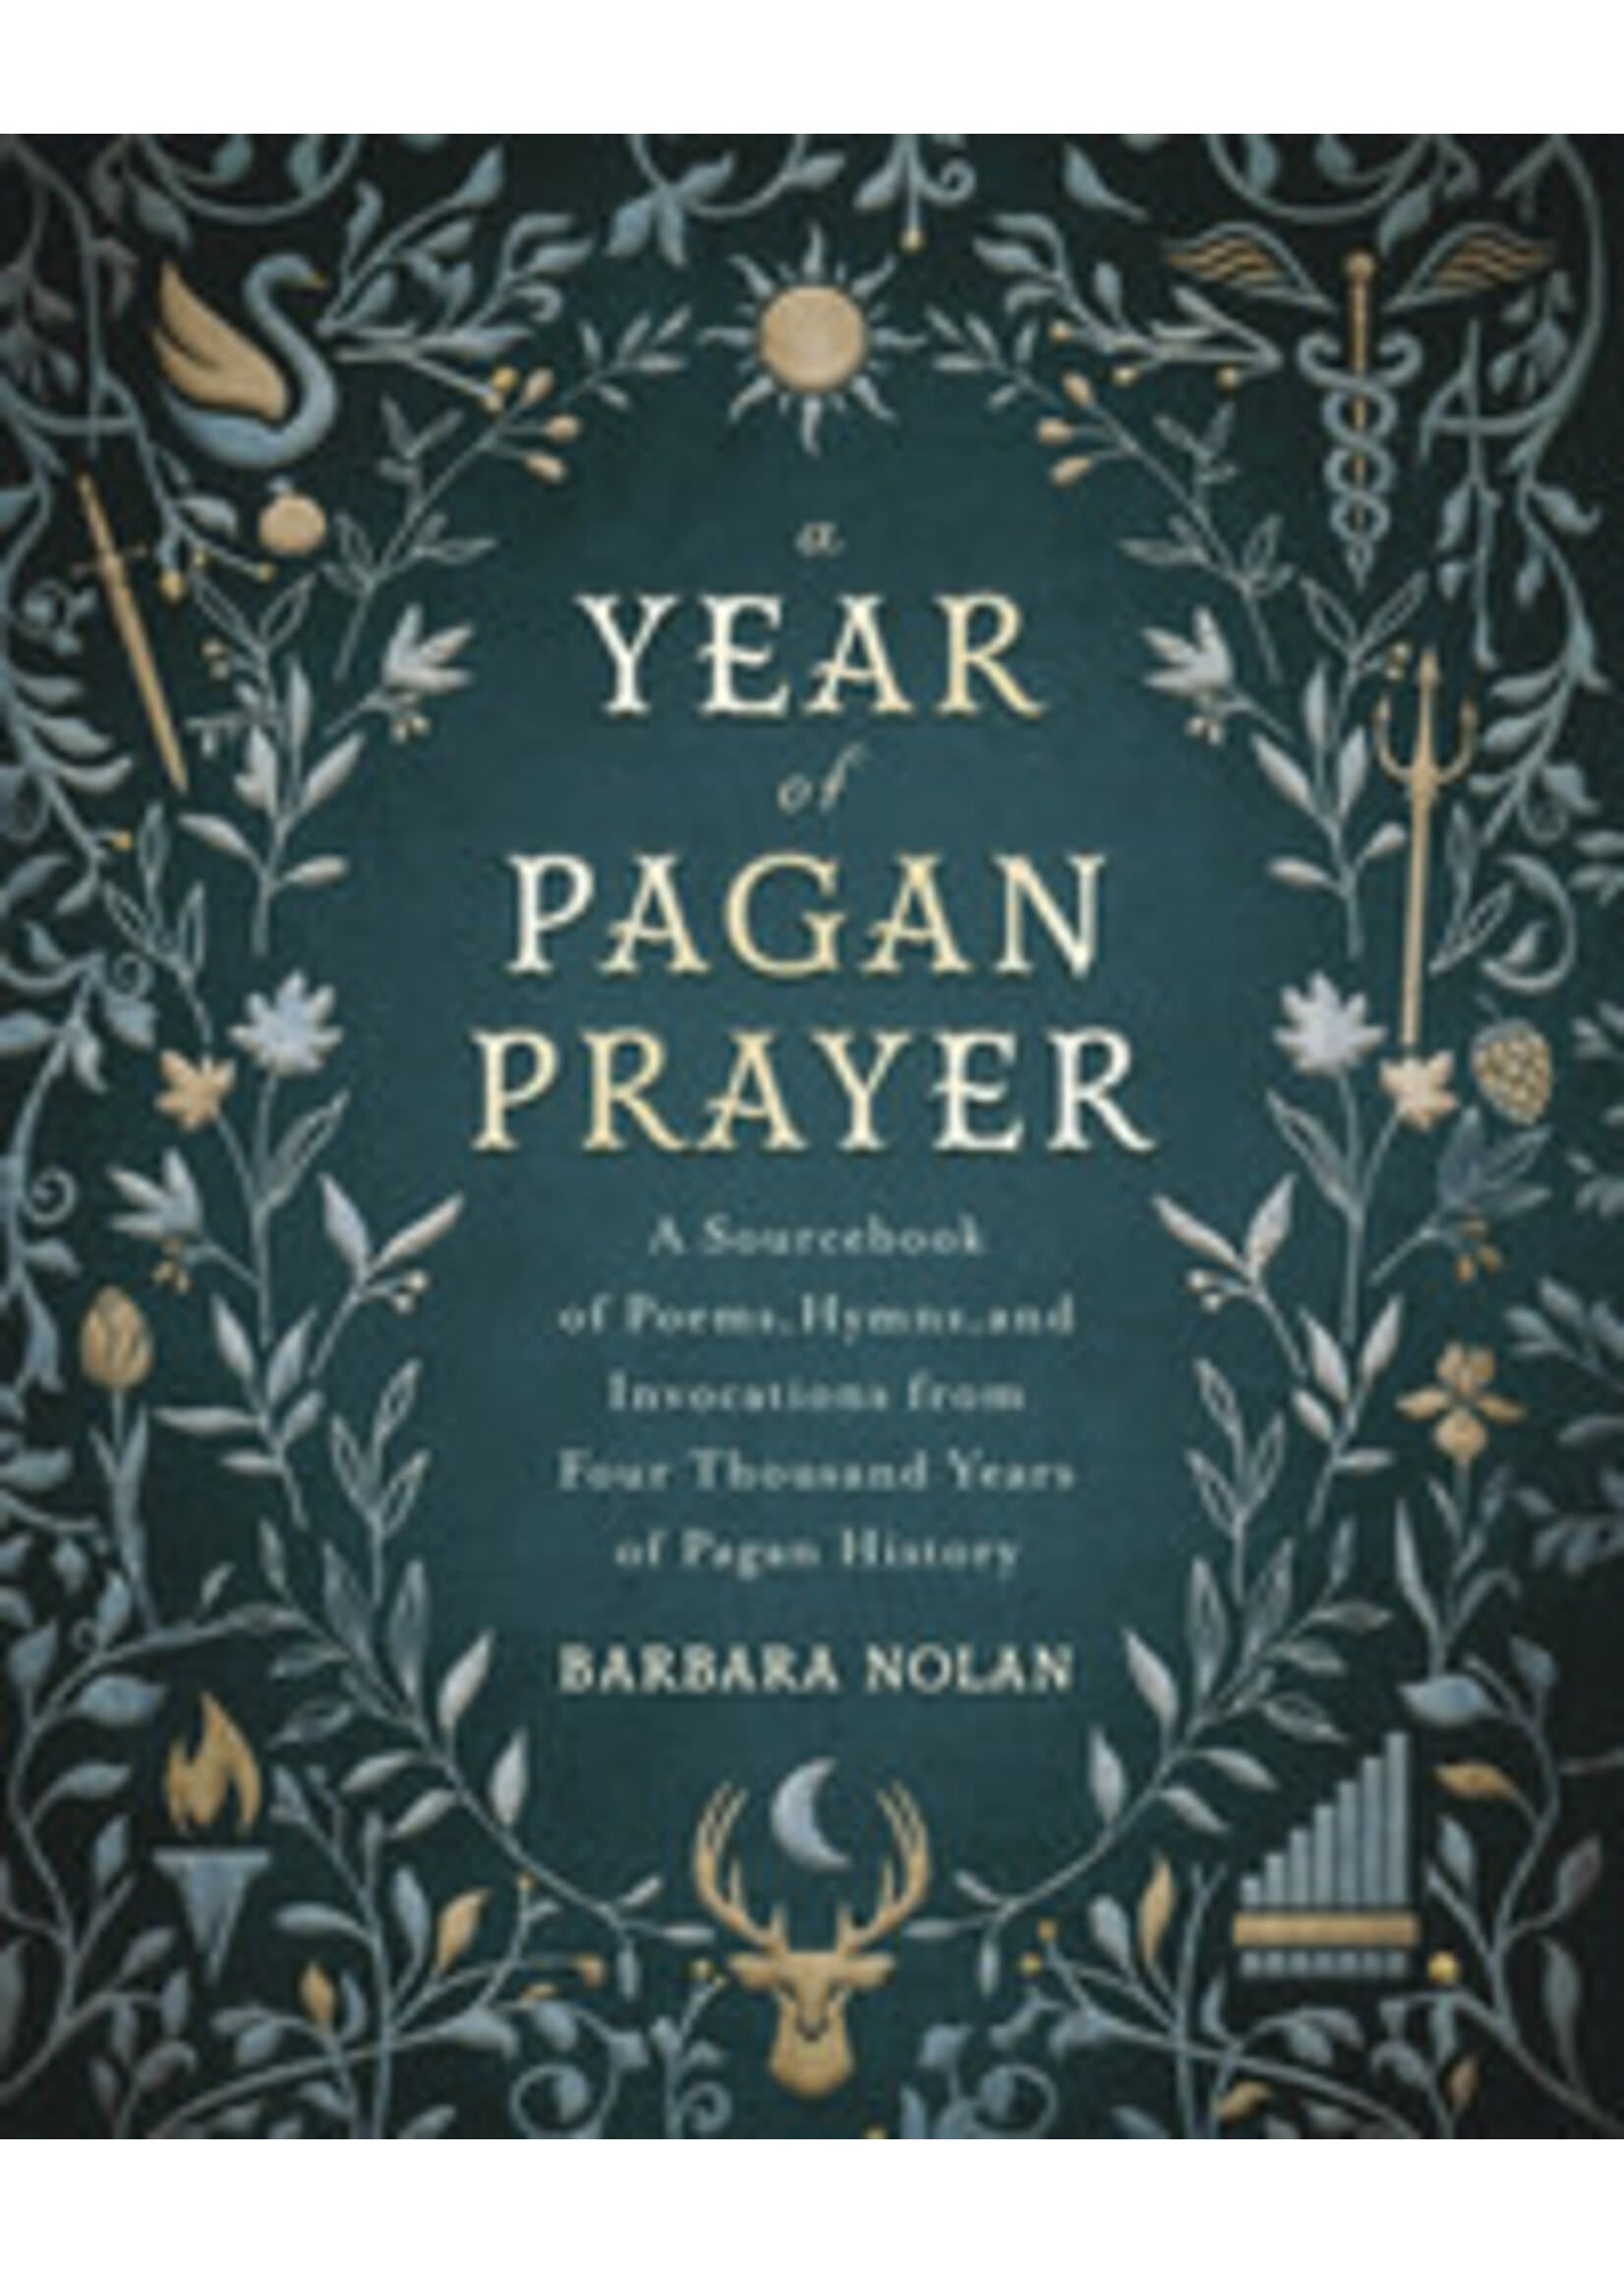 A Year of Pagan Prayer by Barbara Nolan